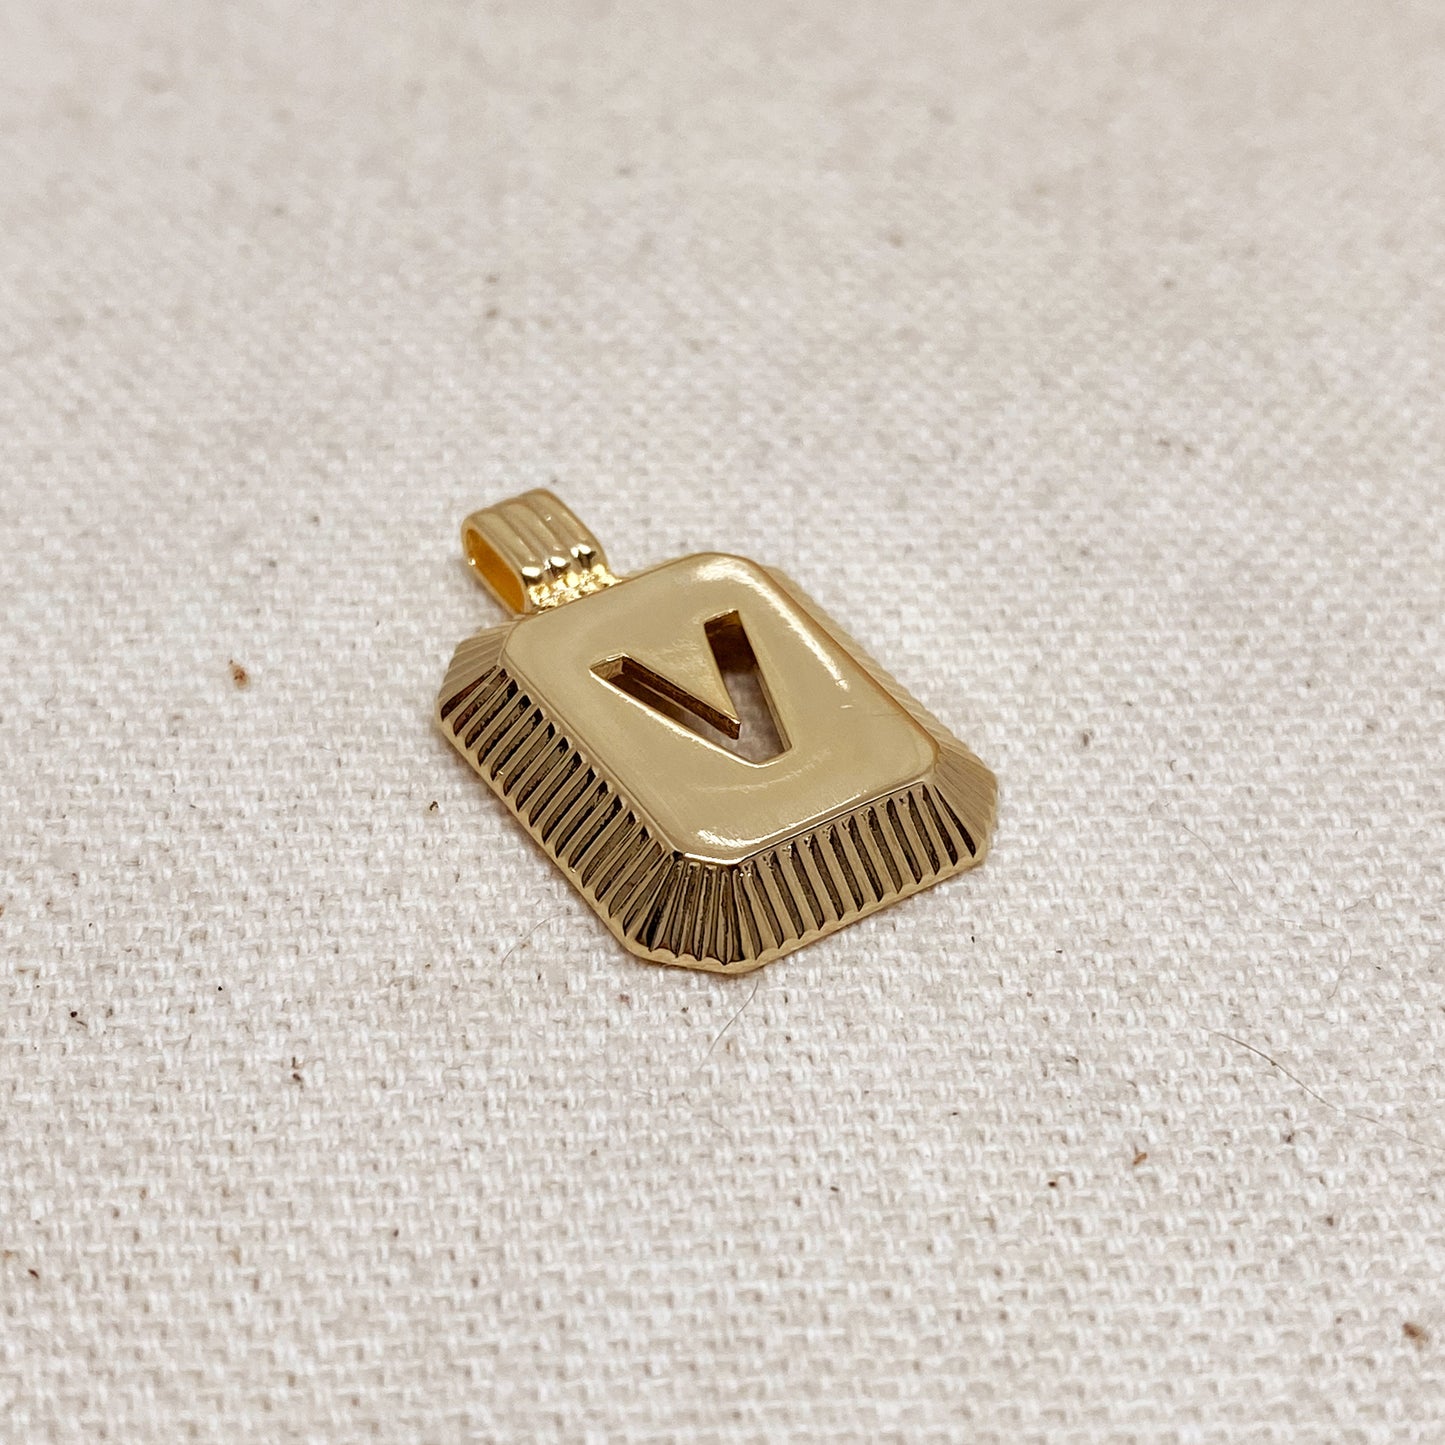 GoldFi 18k Gold Filled Initial Plate Pendant Letter V